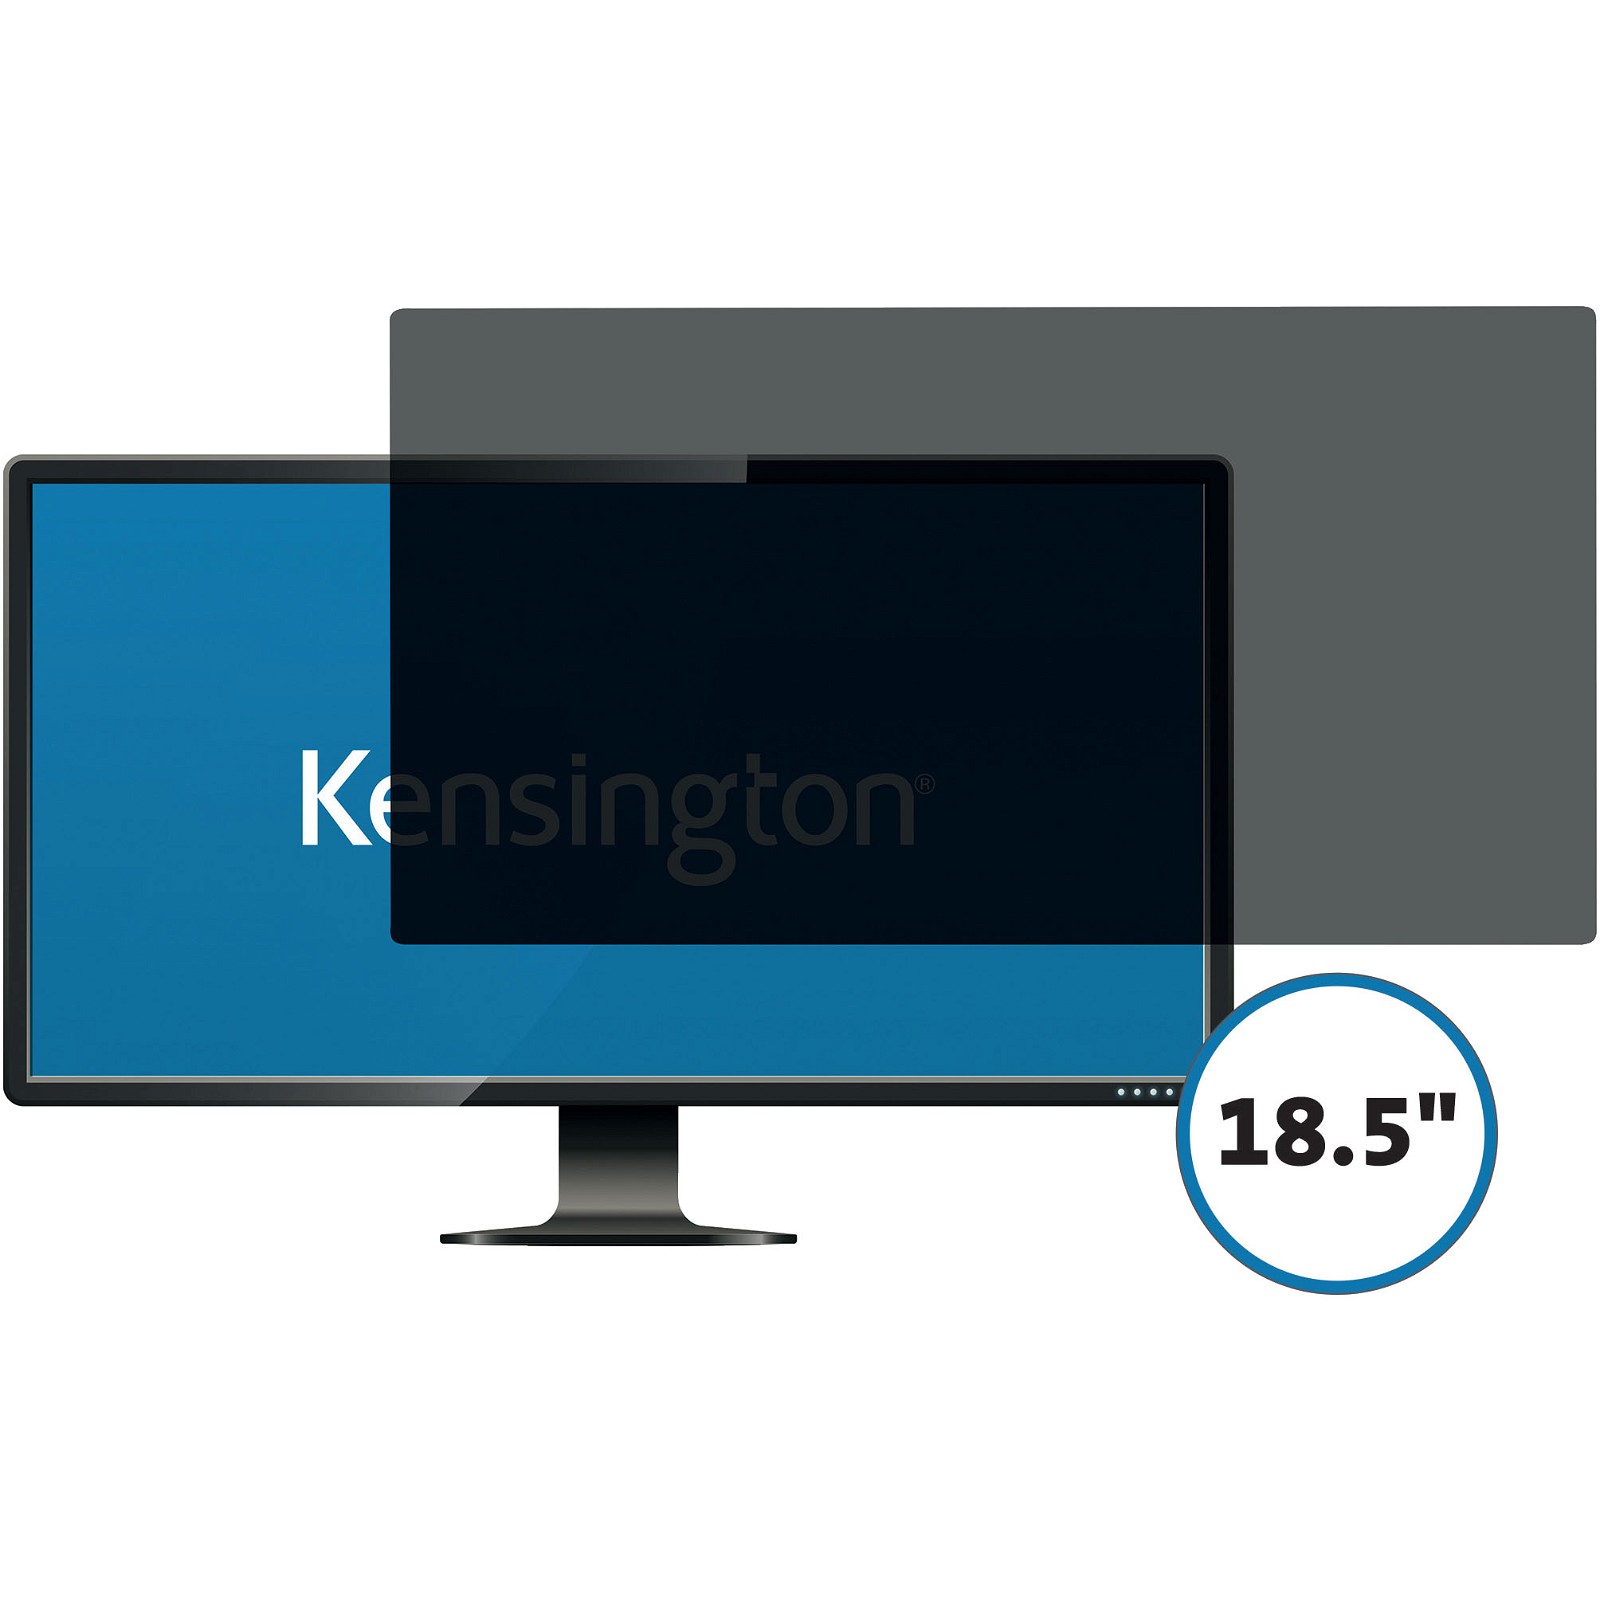 Kensington monitor skærmfilter 18,5"